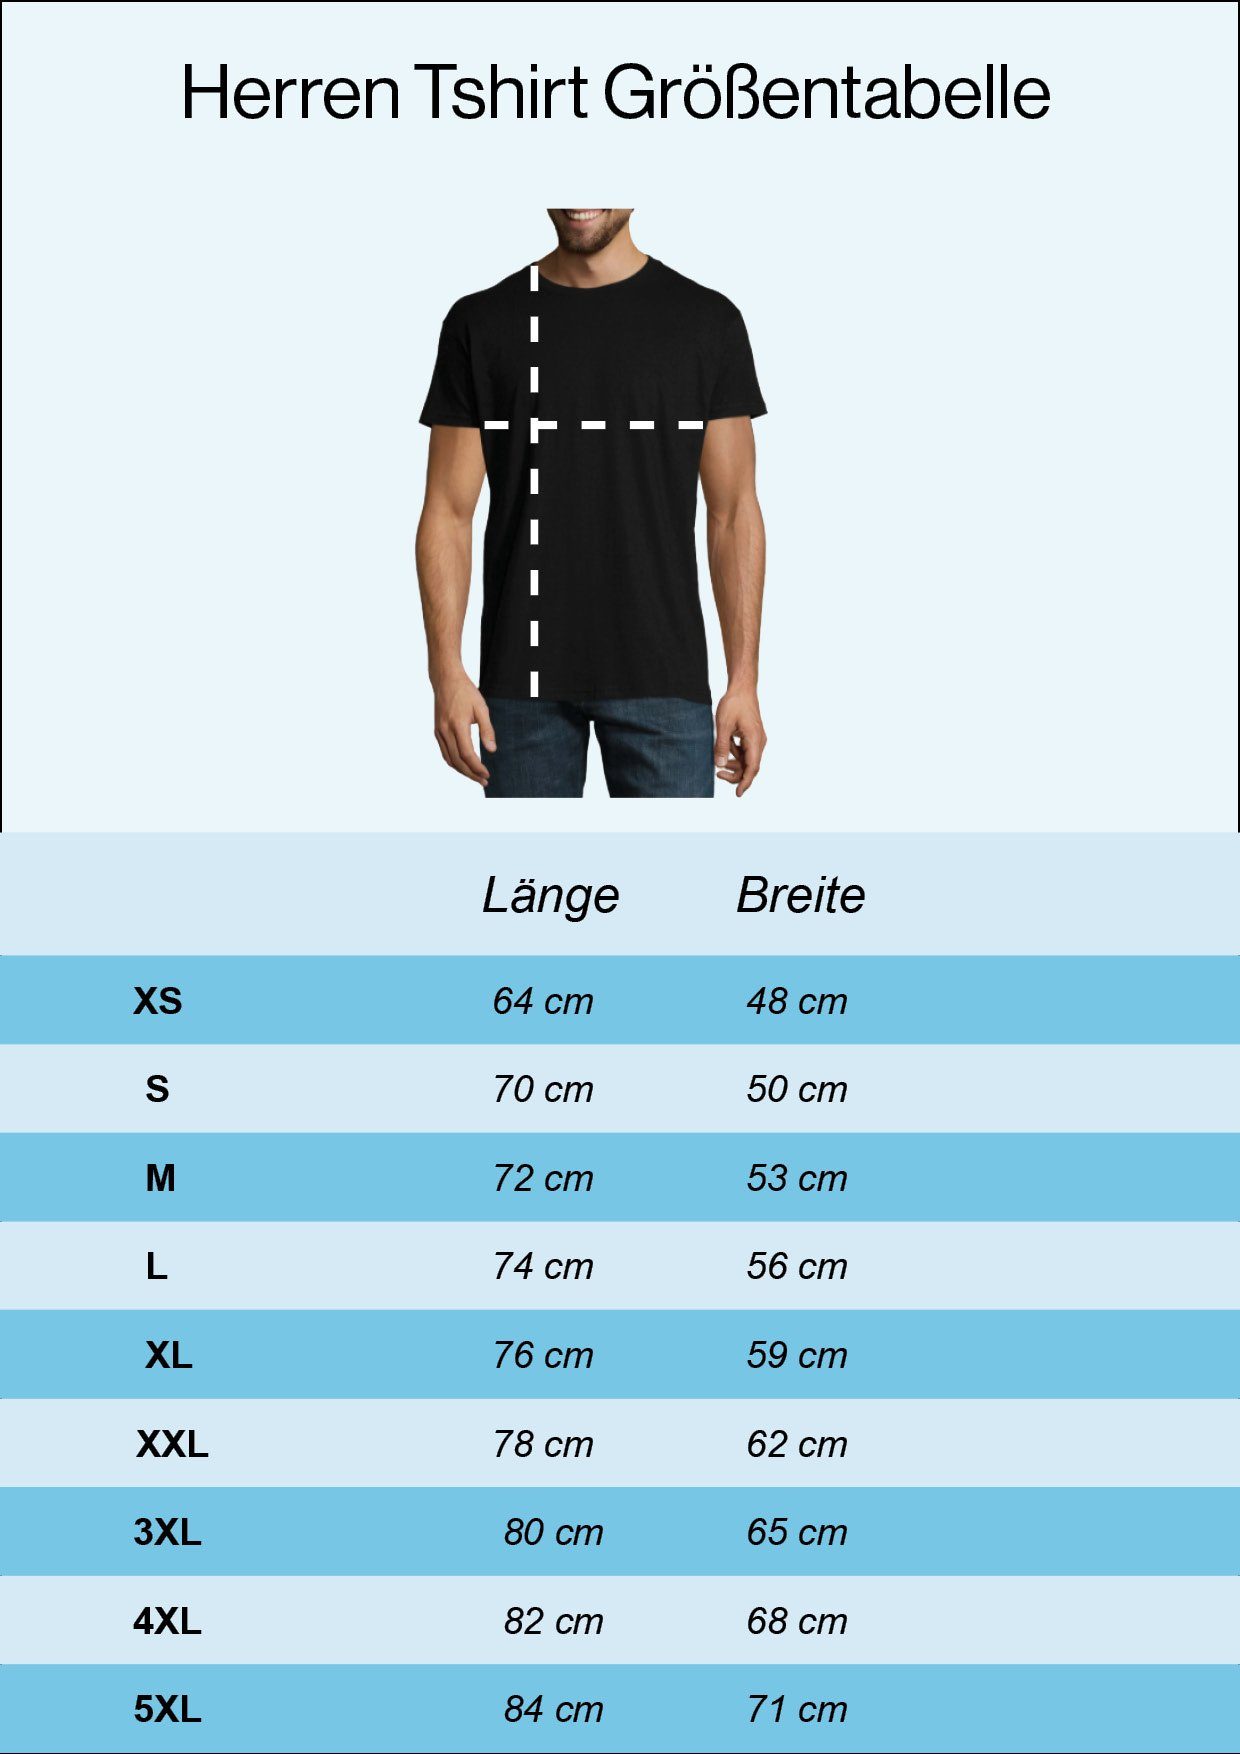 Youth trendigem T-Shirt Herren mit Shirt Heartbeat Mountain Designz Frontprint Grau